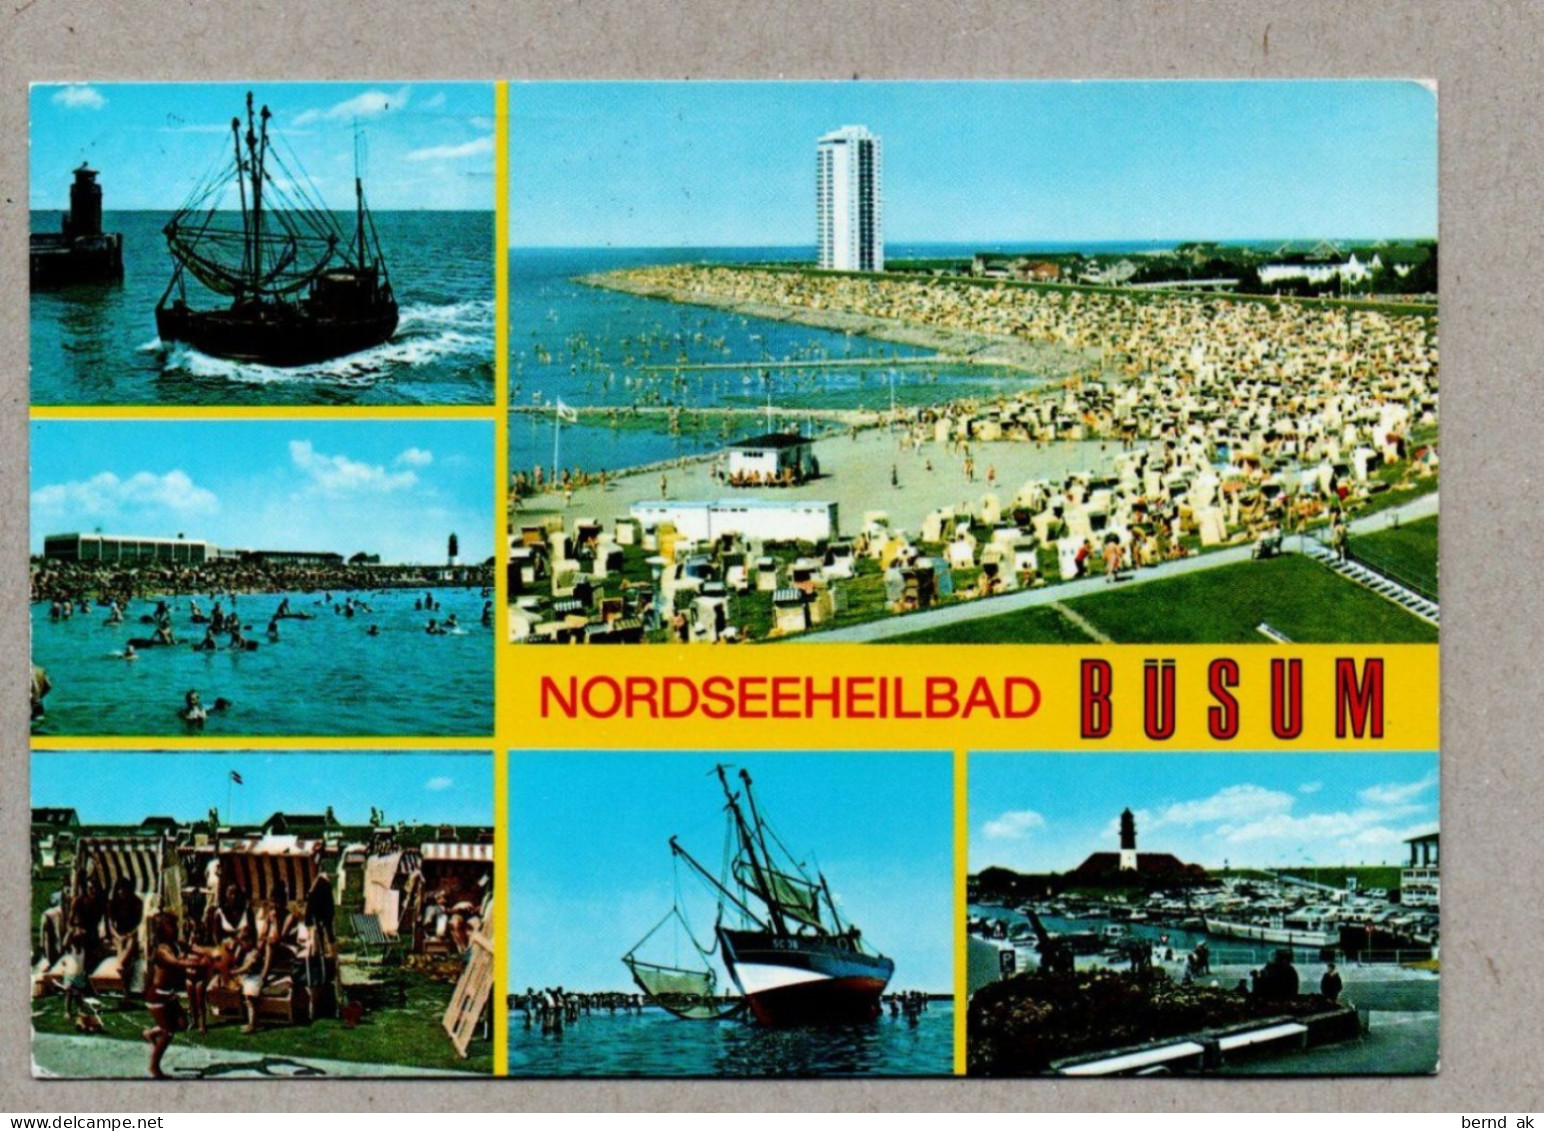 016# BRD -  5  Color gelaufen - AK:  Büsum - leuchtturm, Strand, Fischkutter (alle im Bild)